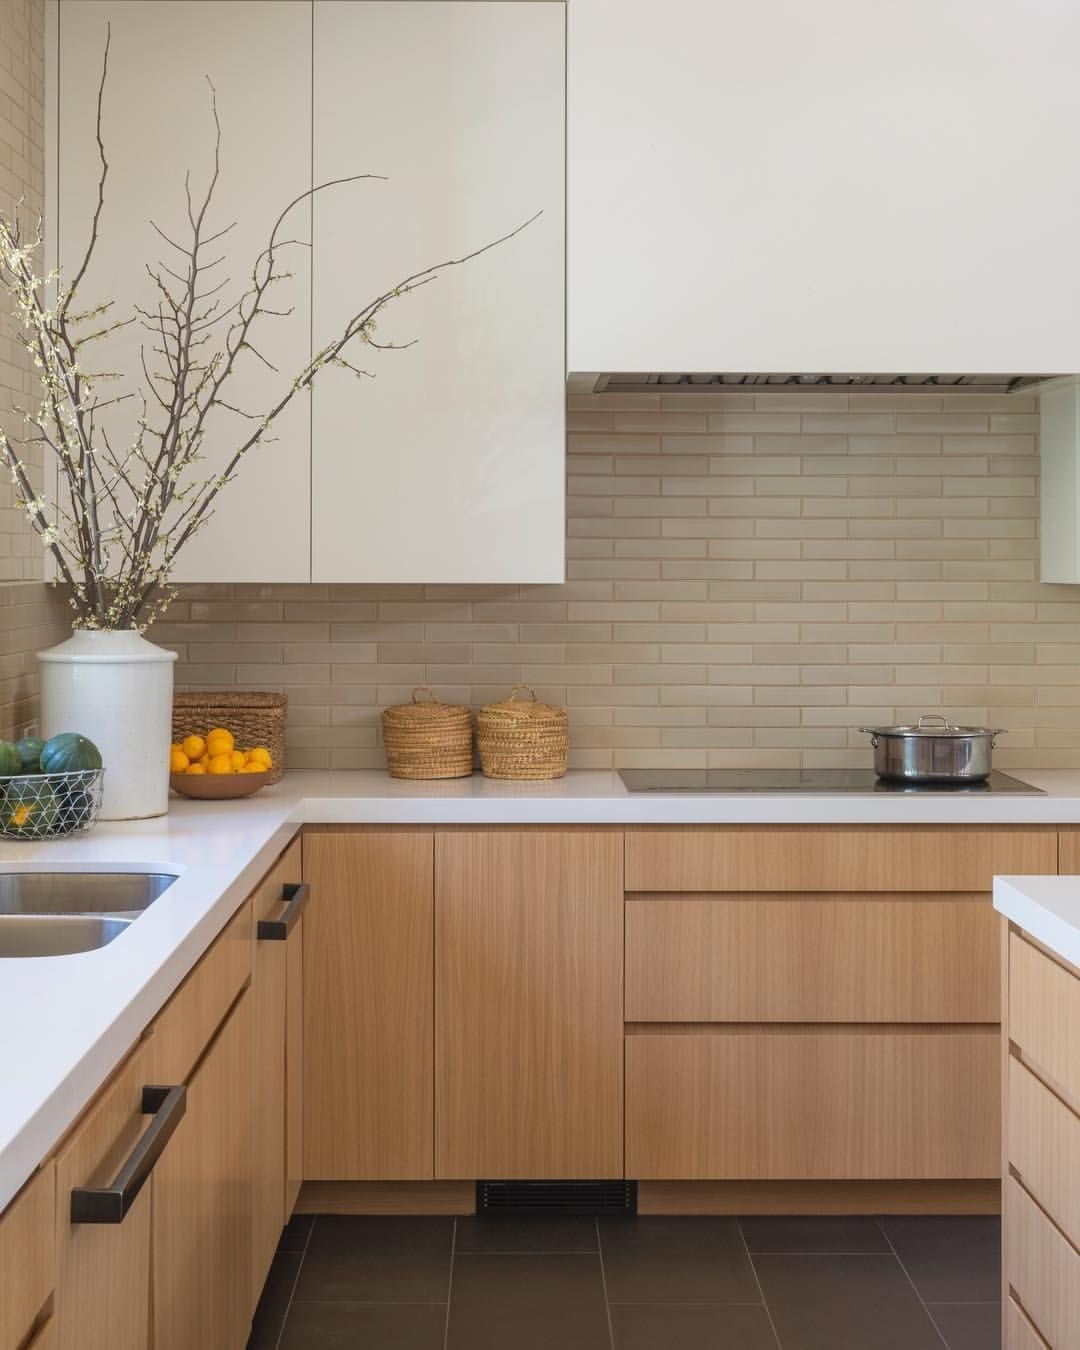 14 Minimalist Kitchen Cabinet Design model In 2019